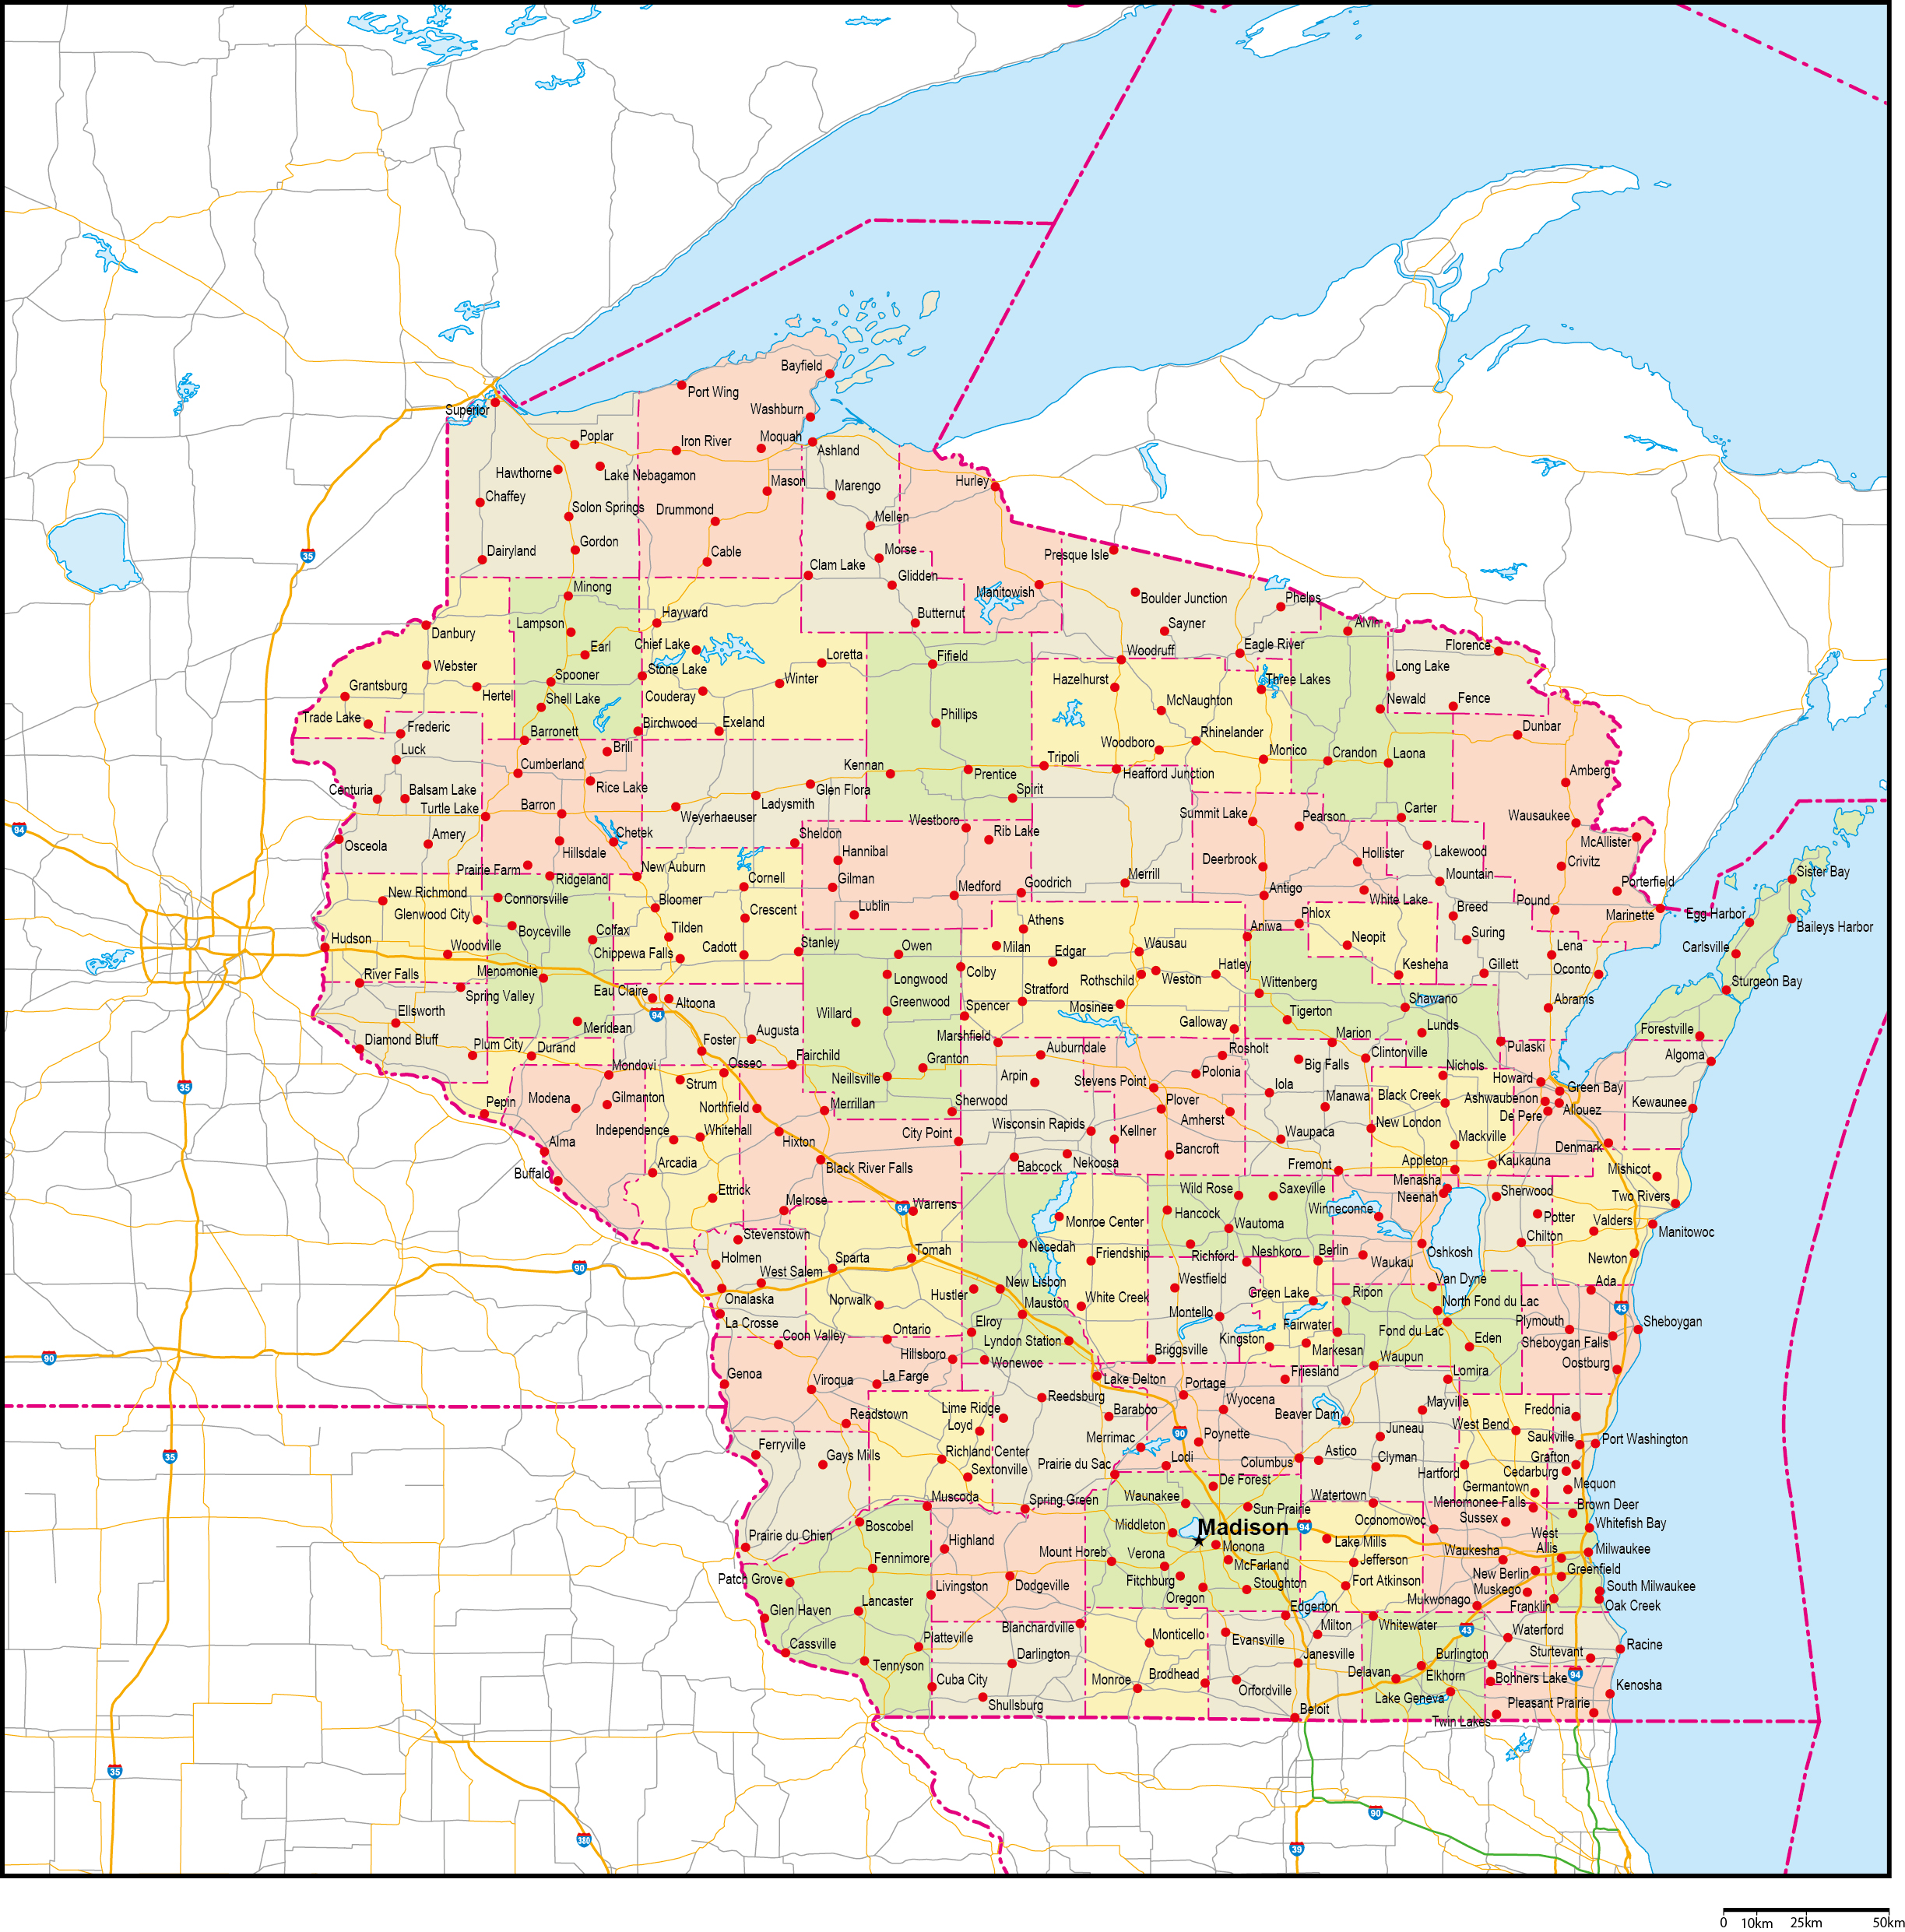 ウィスコンシン州郡色分け地図州都・主な都市・道路あり(英語)フリーデータの画像